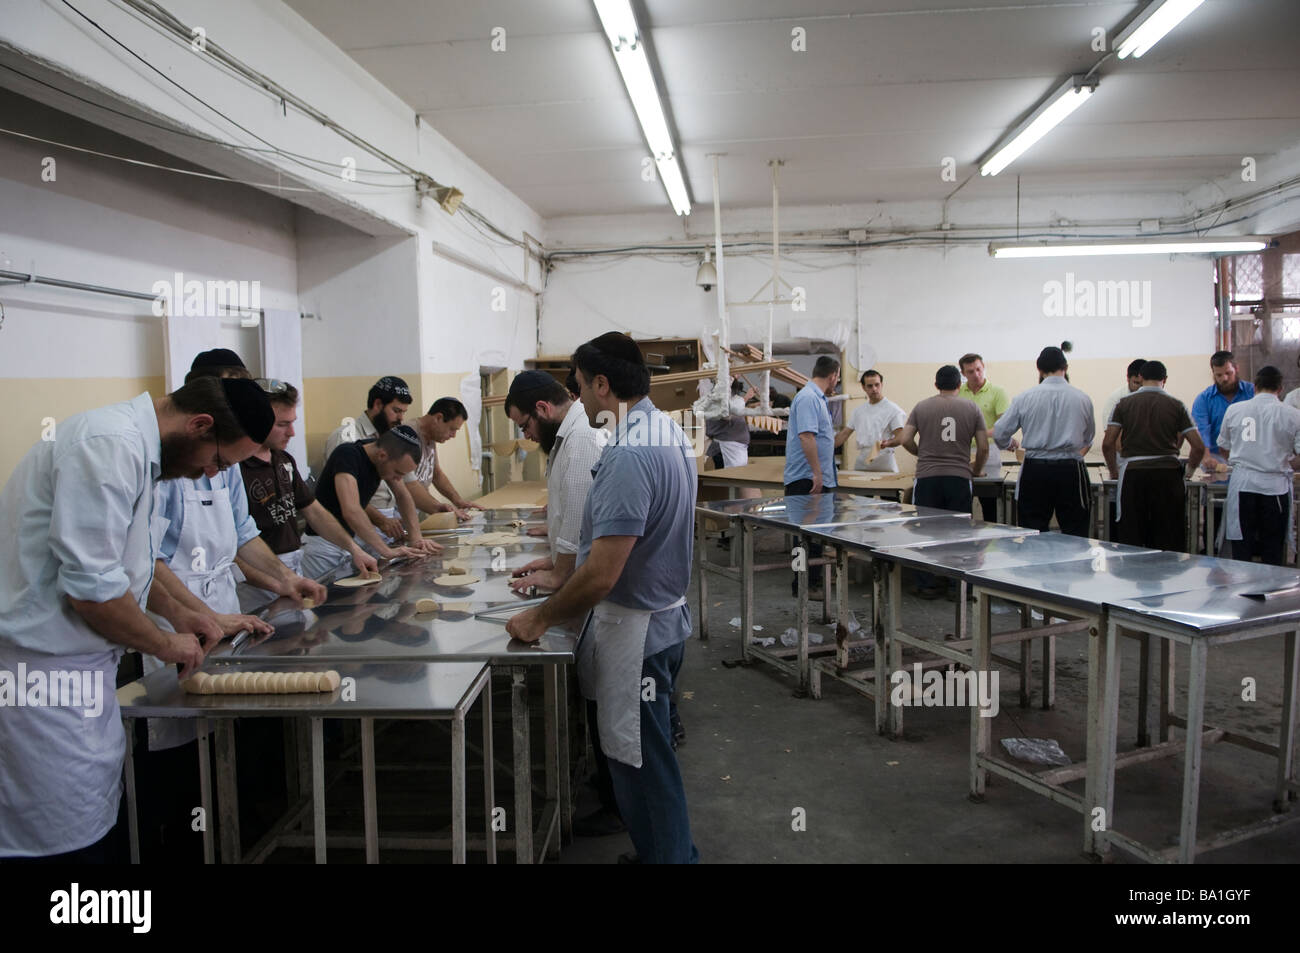 Orthodoxe Juden kneten Matzo Teig in einer Bäckerei für traditionelle Handgemachtes Passah ungesäuertes Matzo-Brot in Kfar Chabad Bäckerei in Zentralisraelisch Stockfoto